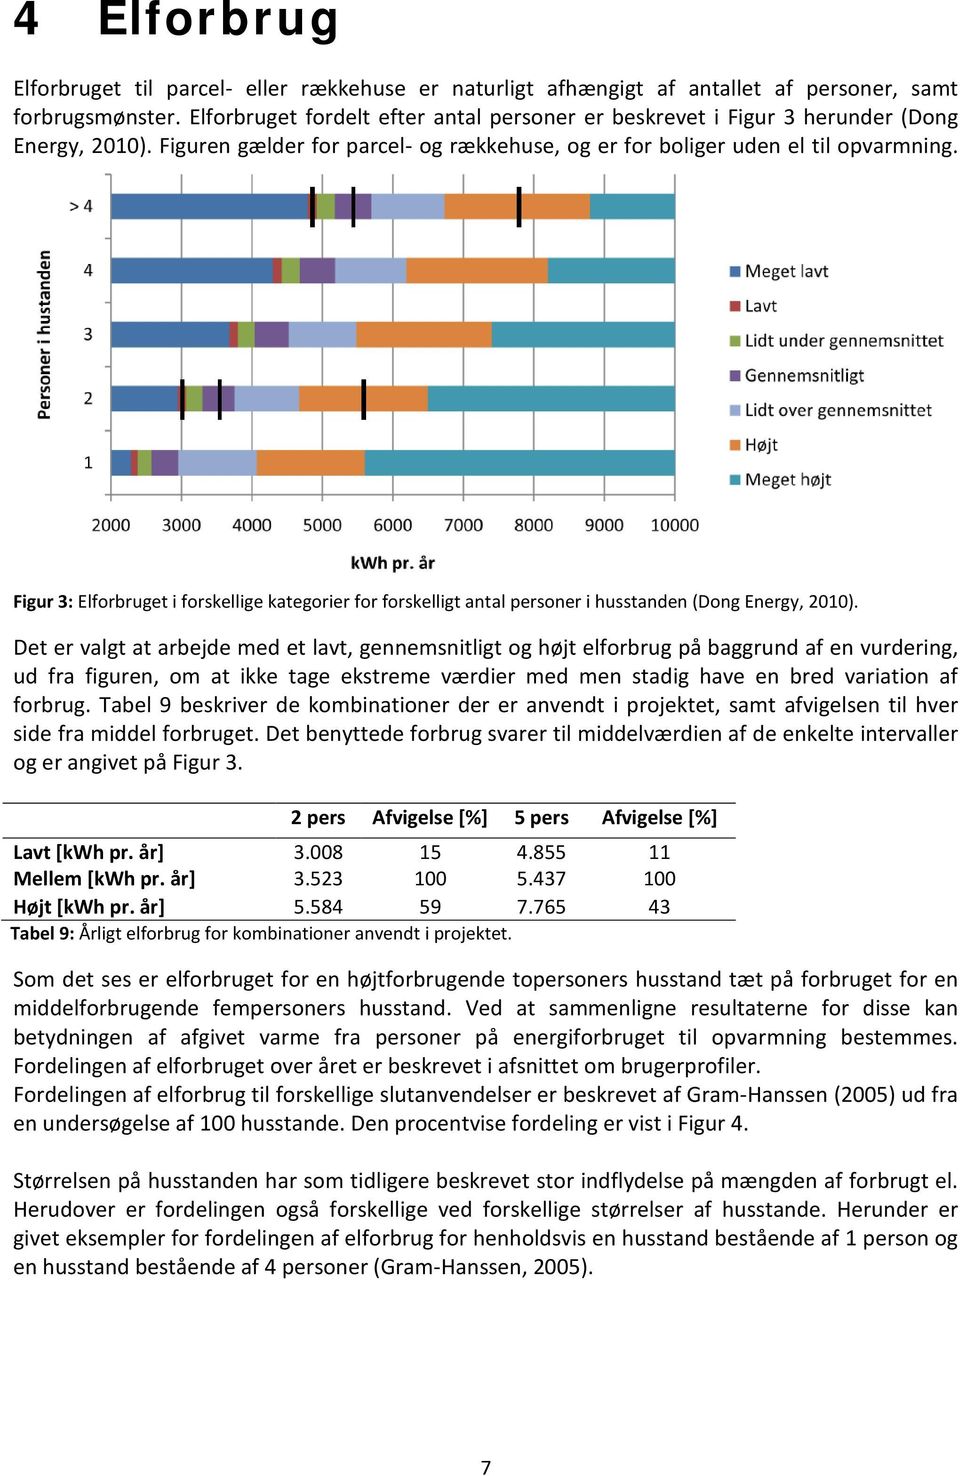 Figur 3: Elforbruget i forskellige kategorier for forskelligt antal personer i husstanden (Dong Energy, 2010).